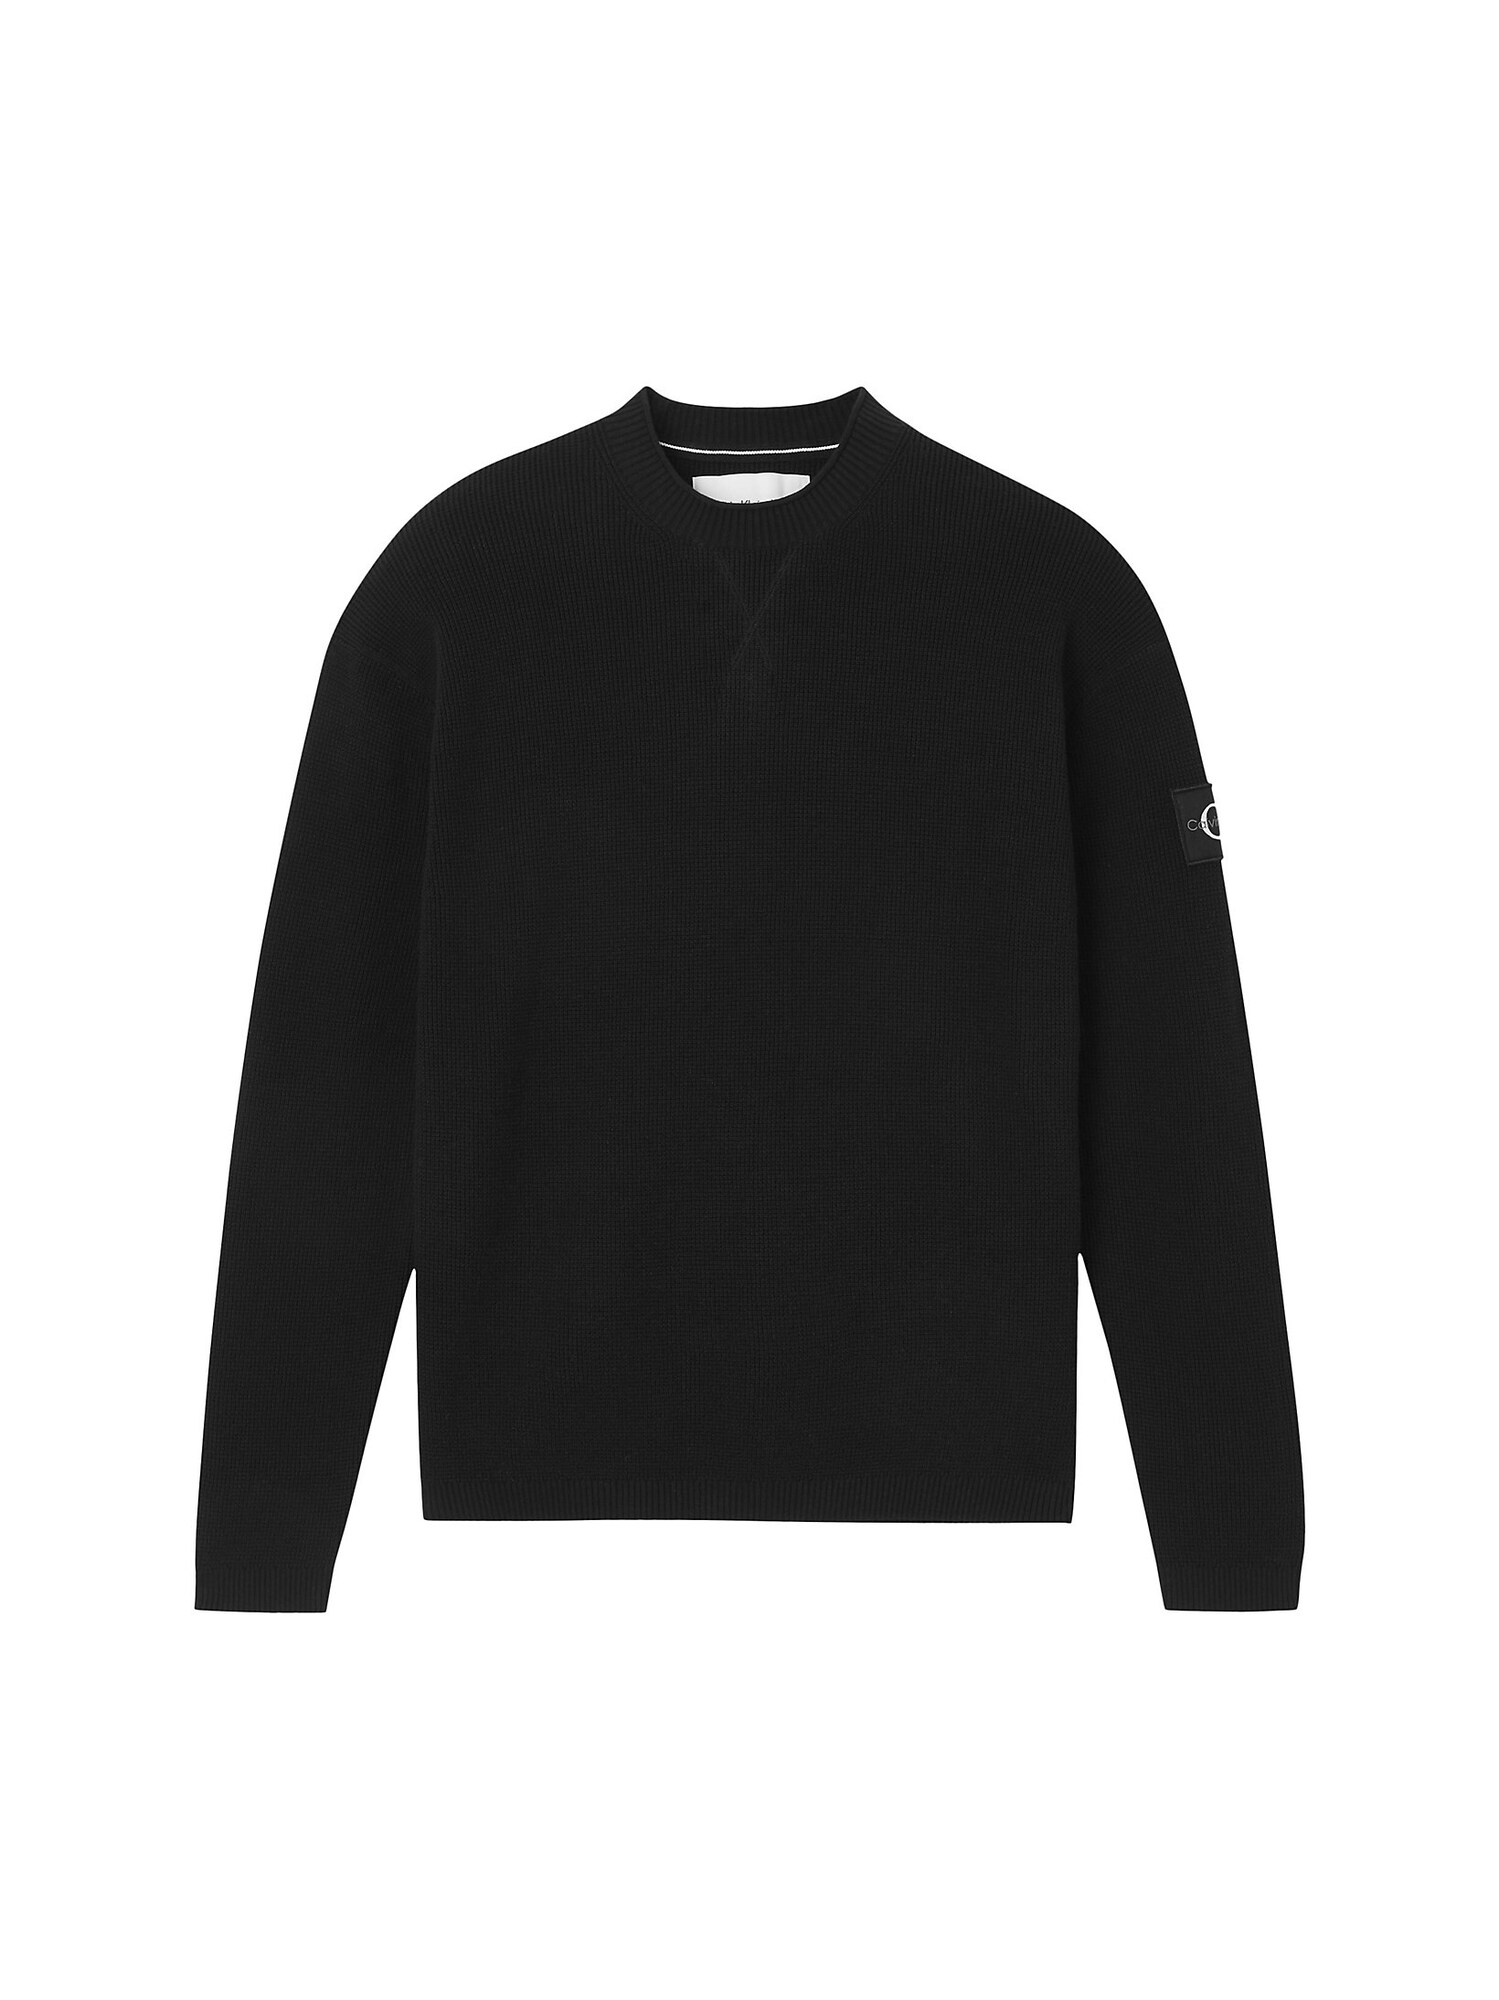 Calvin Klein Jeans Pullover schwarz / grau / wei